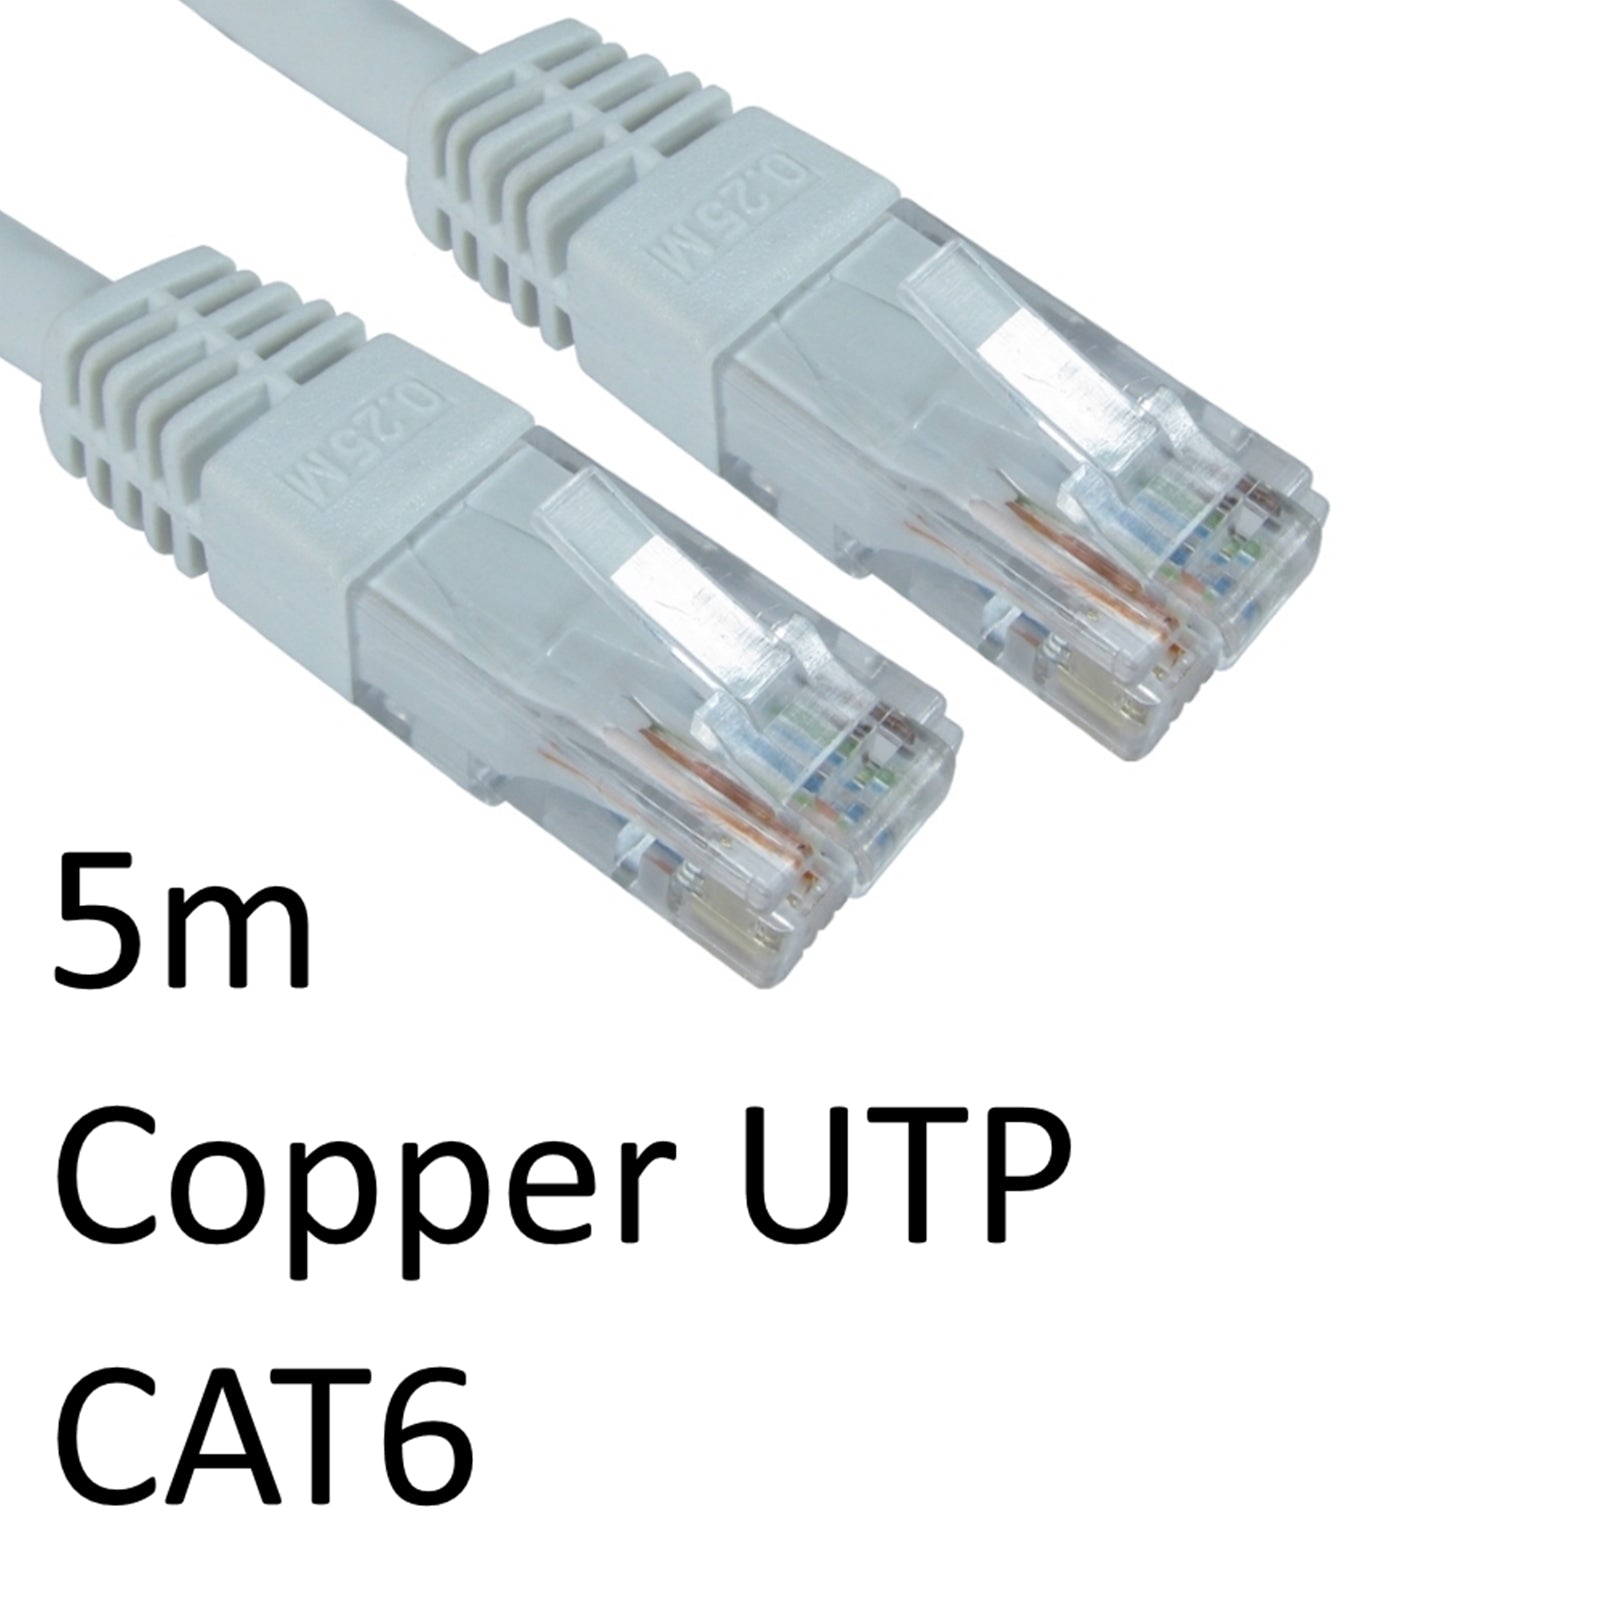 5m White CAT6 RJ45 Copper UTP Network Cable